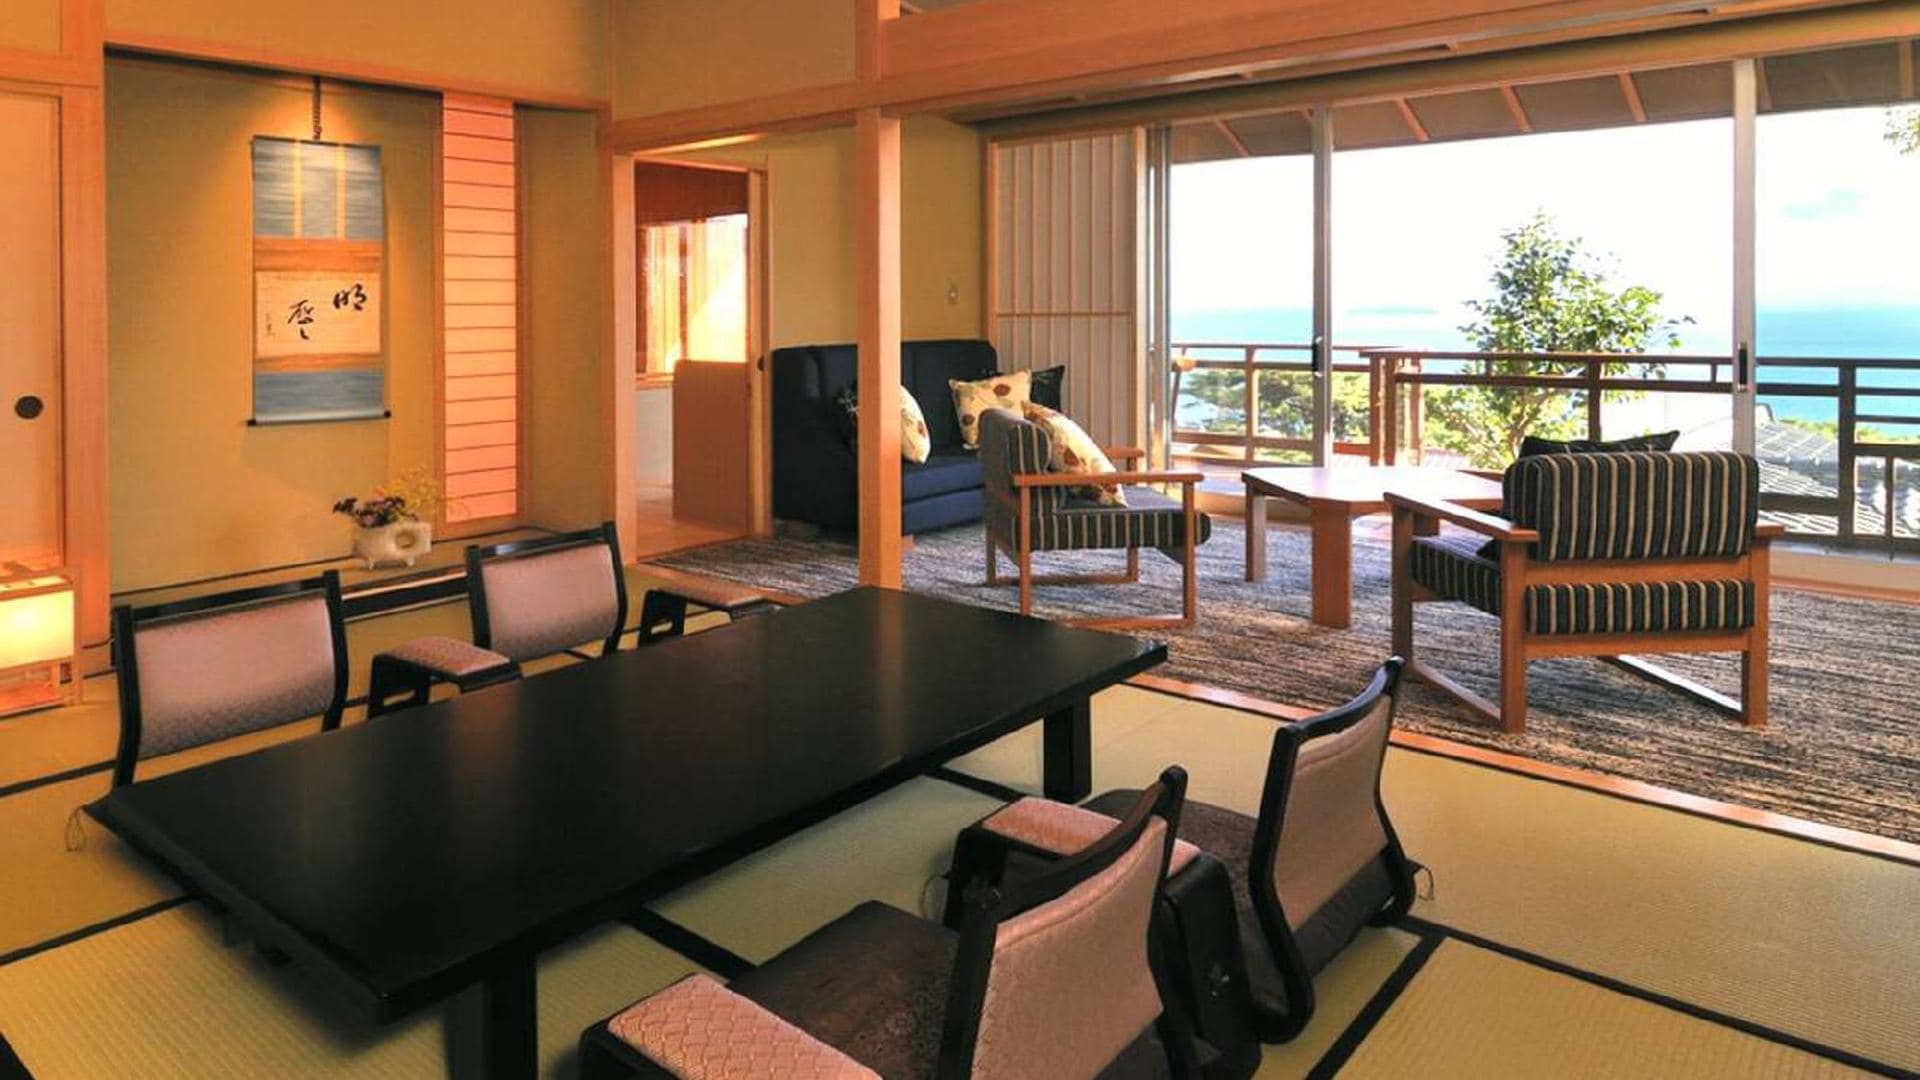 【DX 일본식 서양실 예】 전망이 좋은 차분한 분위기의 모습의 방입니다